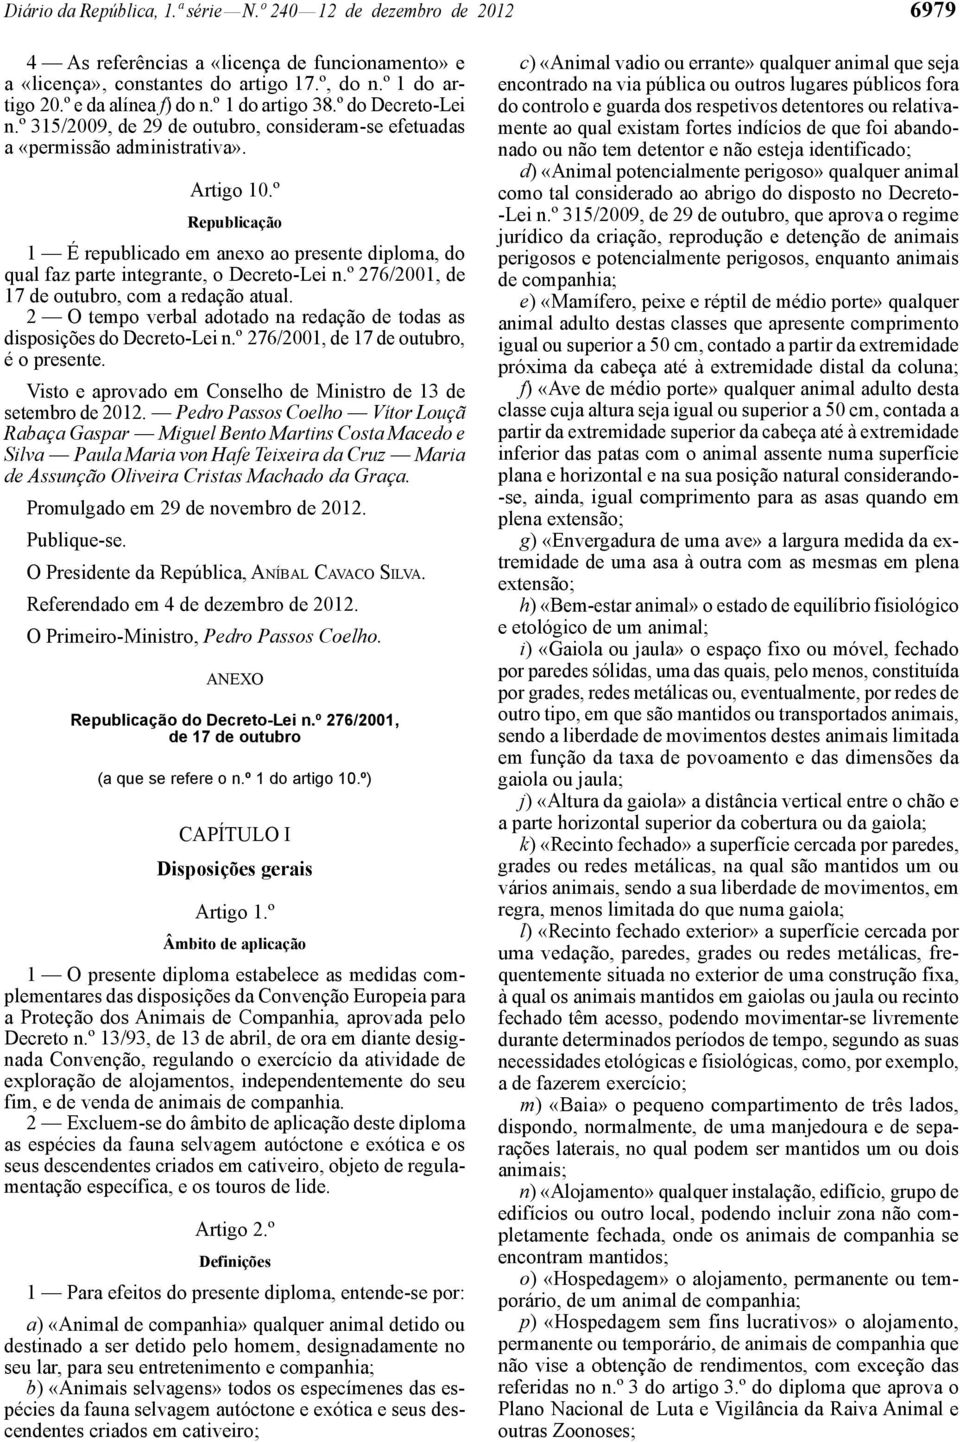 º Republicação 1 É republicado em anexo ao presente diploma, do qual faz parte integrante, o Decreto -Lei n.º 276/2001, de 17 de outubro, com a redação atual.